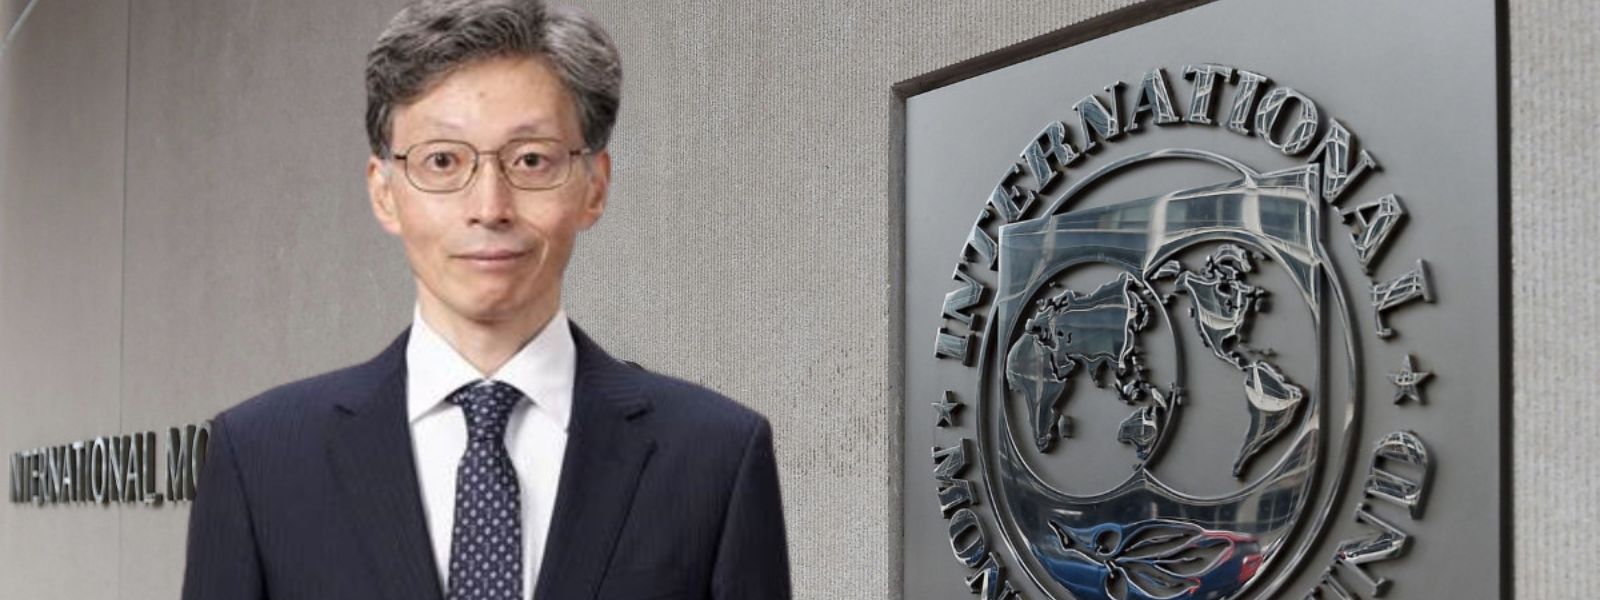 IMF Deputy Managing Director Kenji Okamura to arrive in Sri Lanka